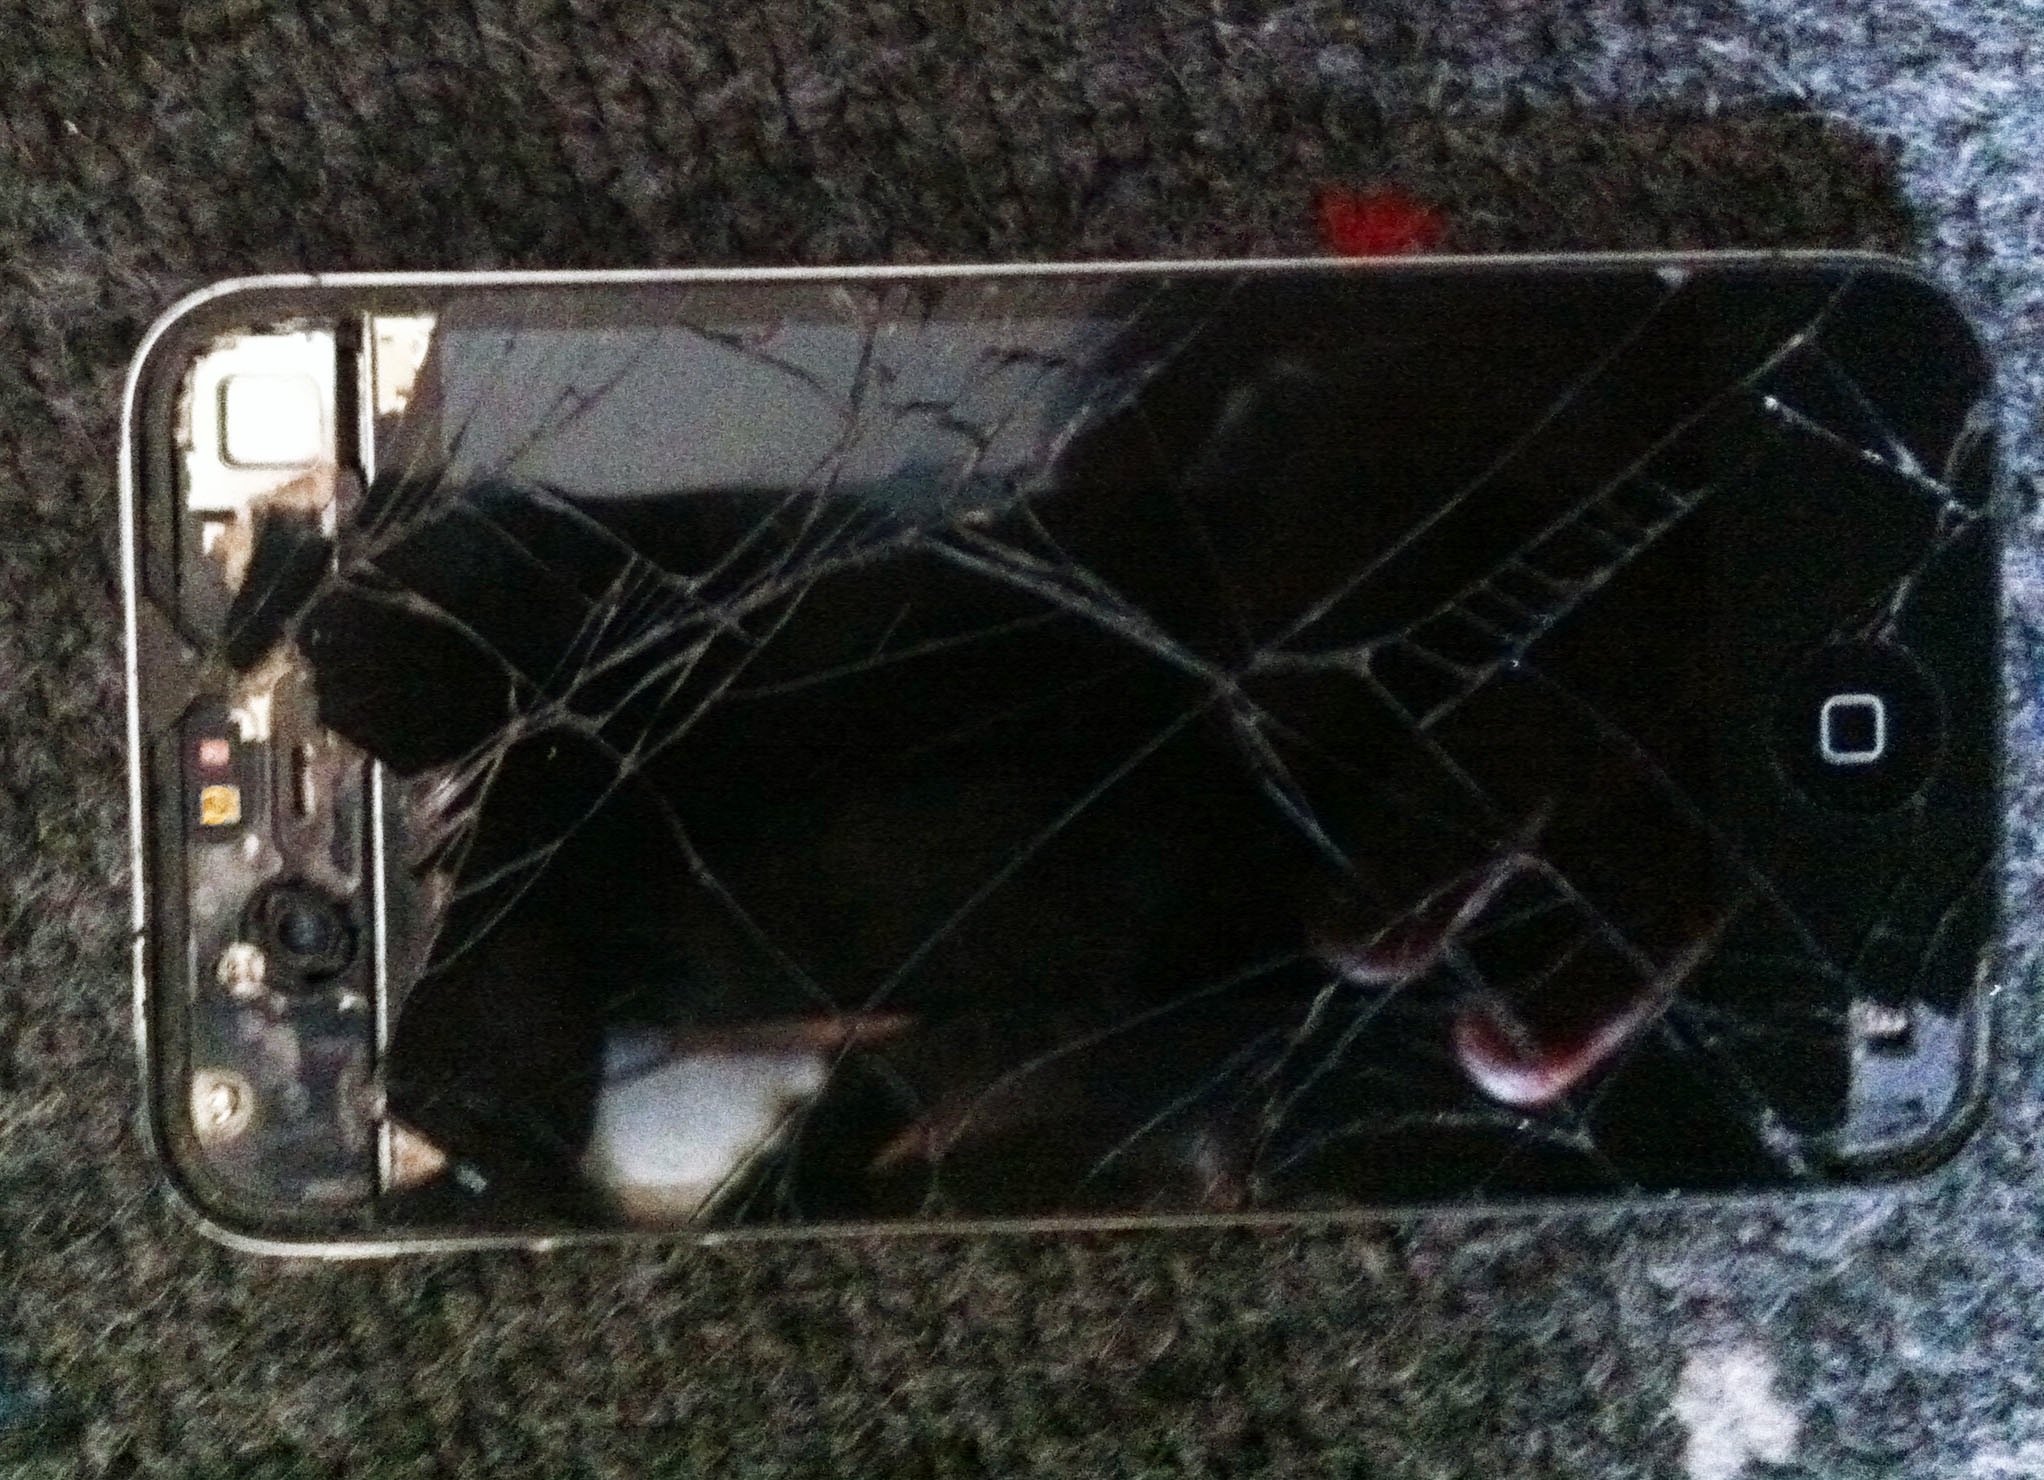 Broken iPhone 4